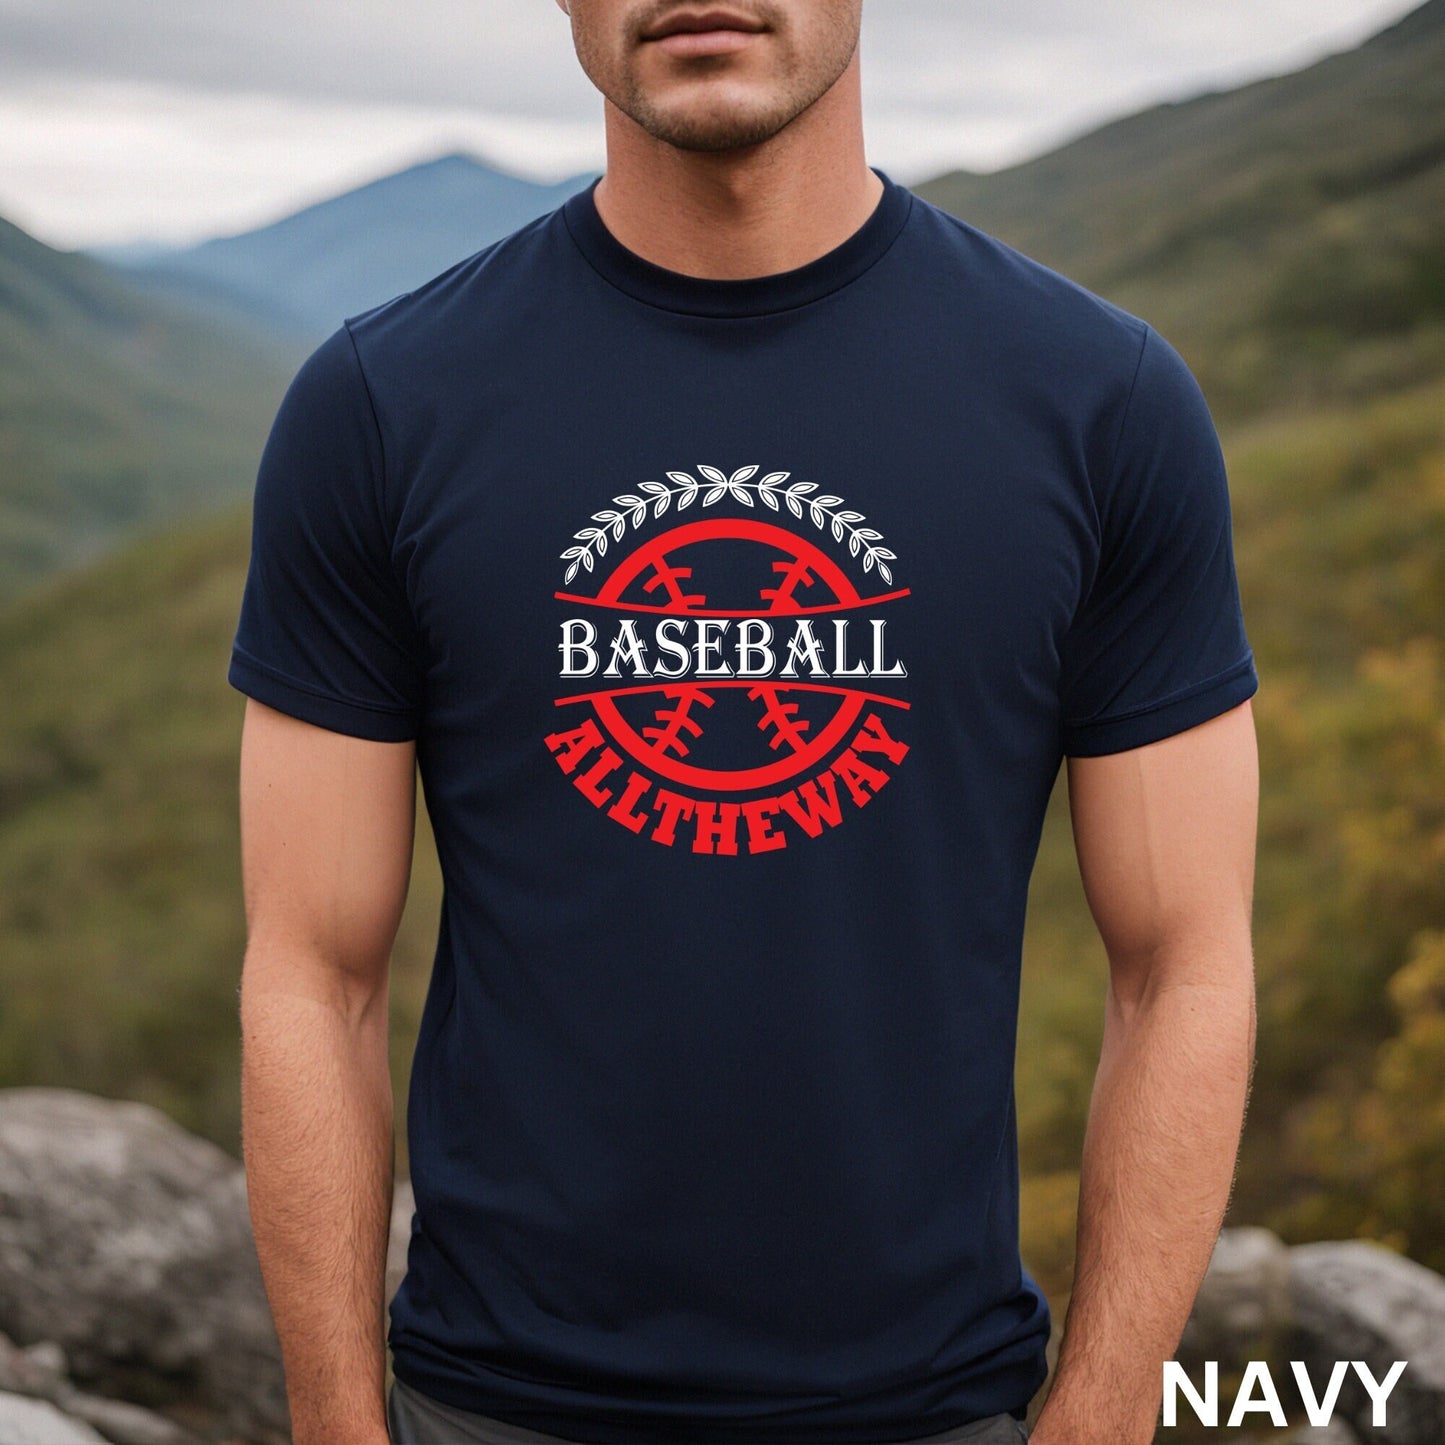 Baseball Shirt, Baseball Shirts, Baseball Mom Shirt, Baseball Birthday Party, Baseball Gifts, Baseball Gifts for Boys, Baseball Team Gifts